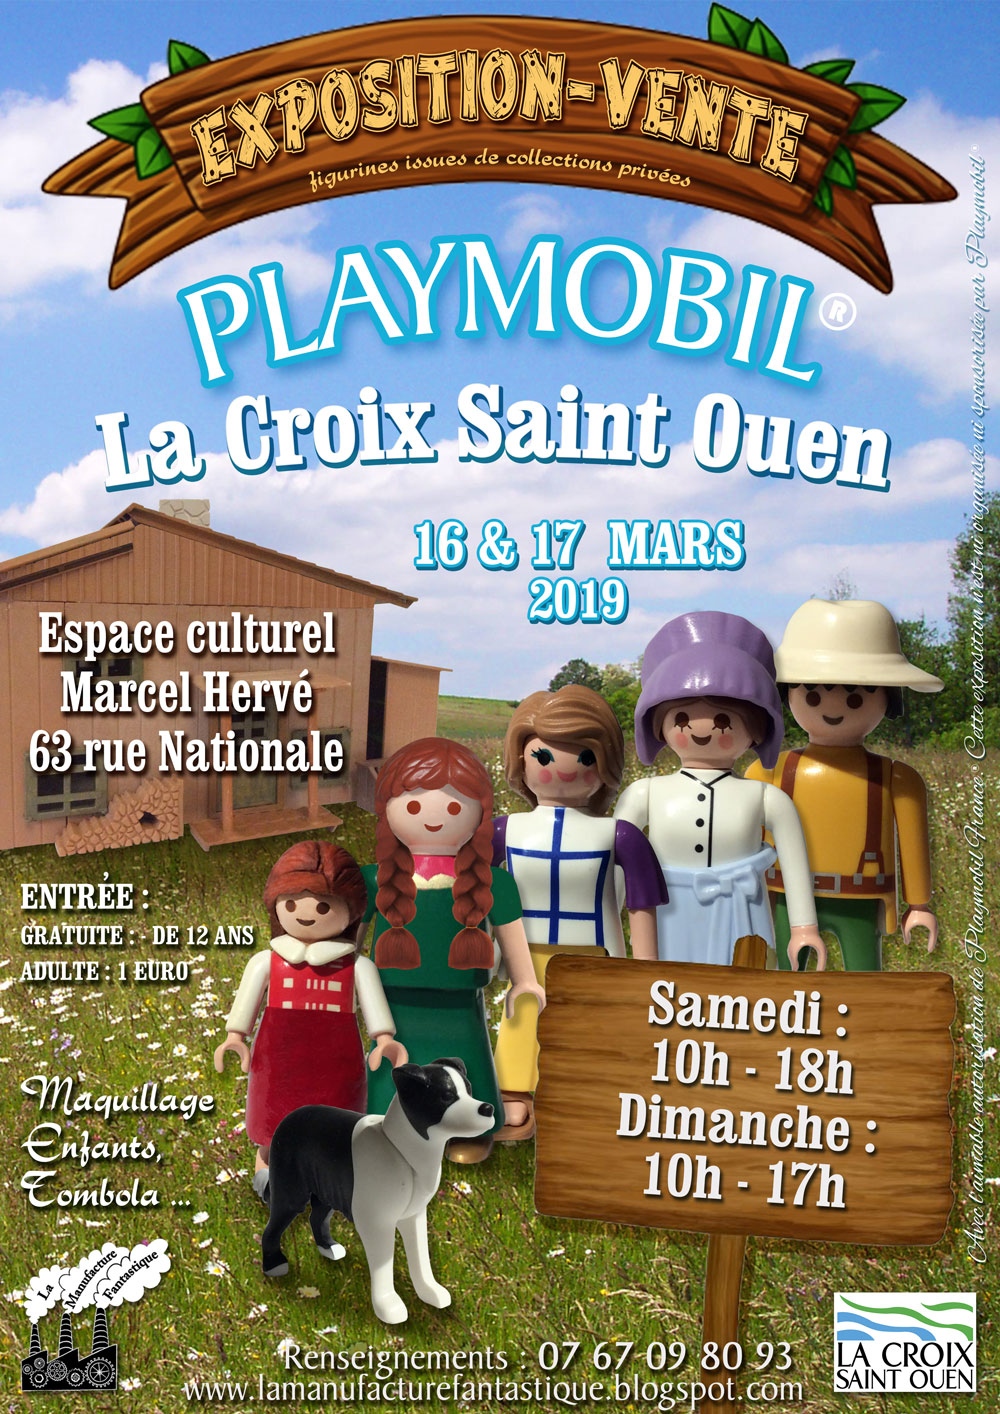 2nd Bourse Expo Playmobil Lacroix St Ouen